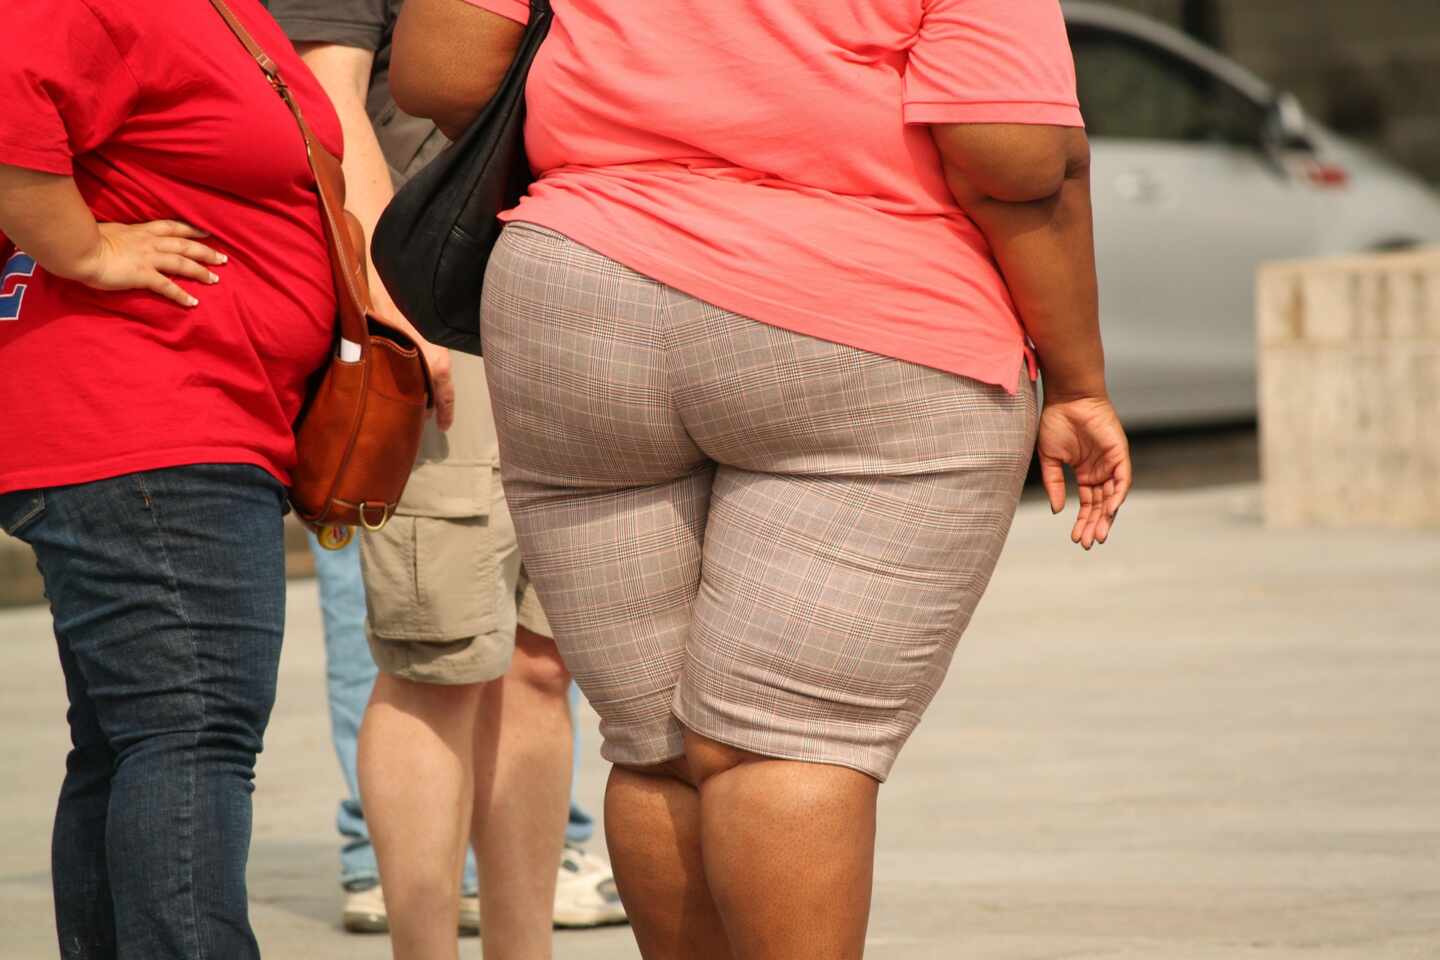 Por qué, mujer, es mala para tí la obesidad